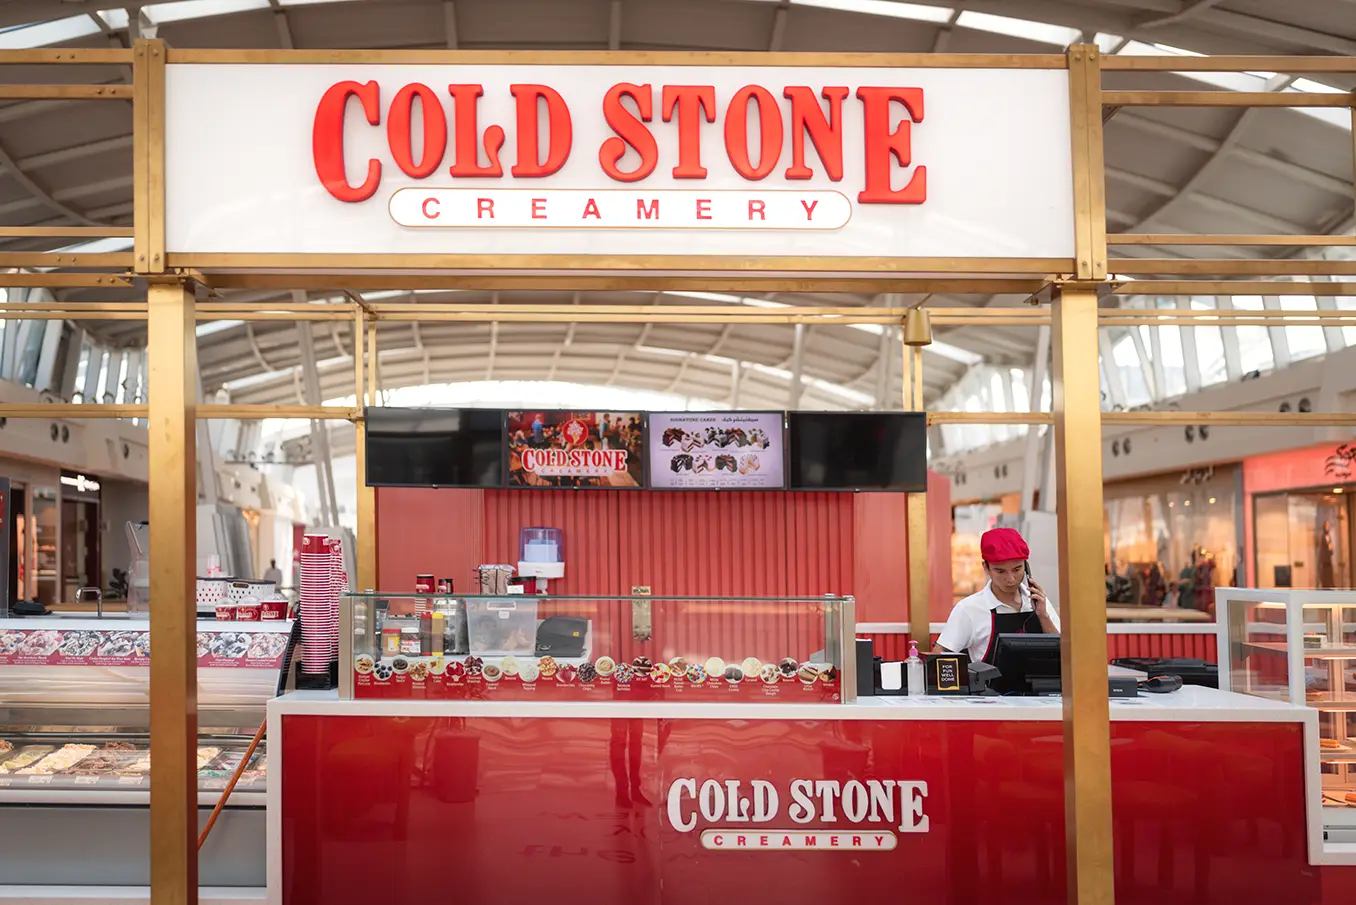 تم افتتاح متجر كولدستون كريمري في رد سي مول في جدة السعودية